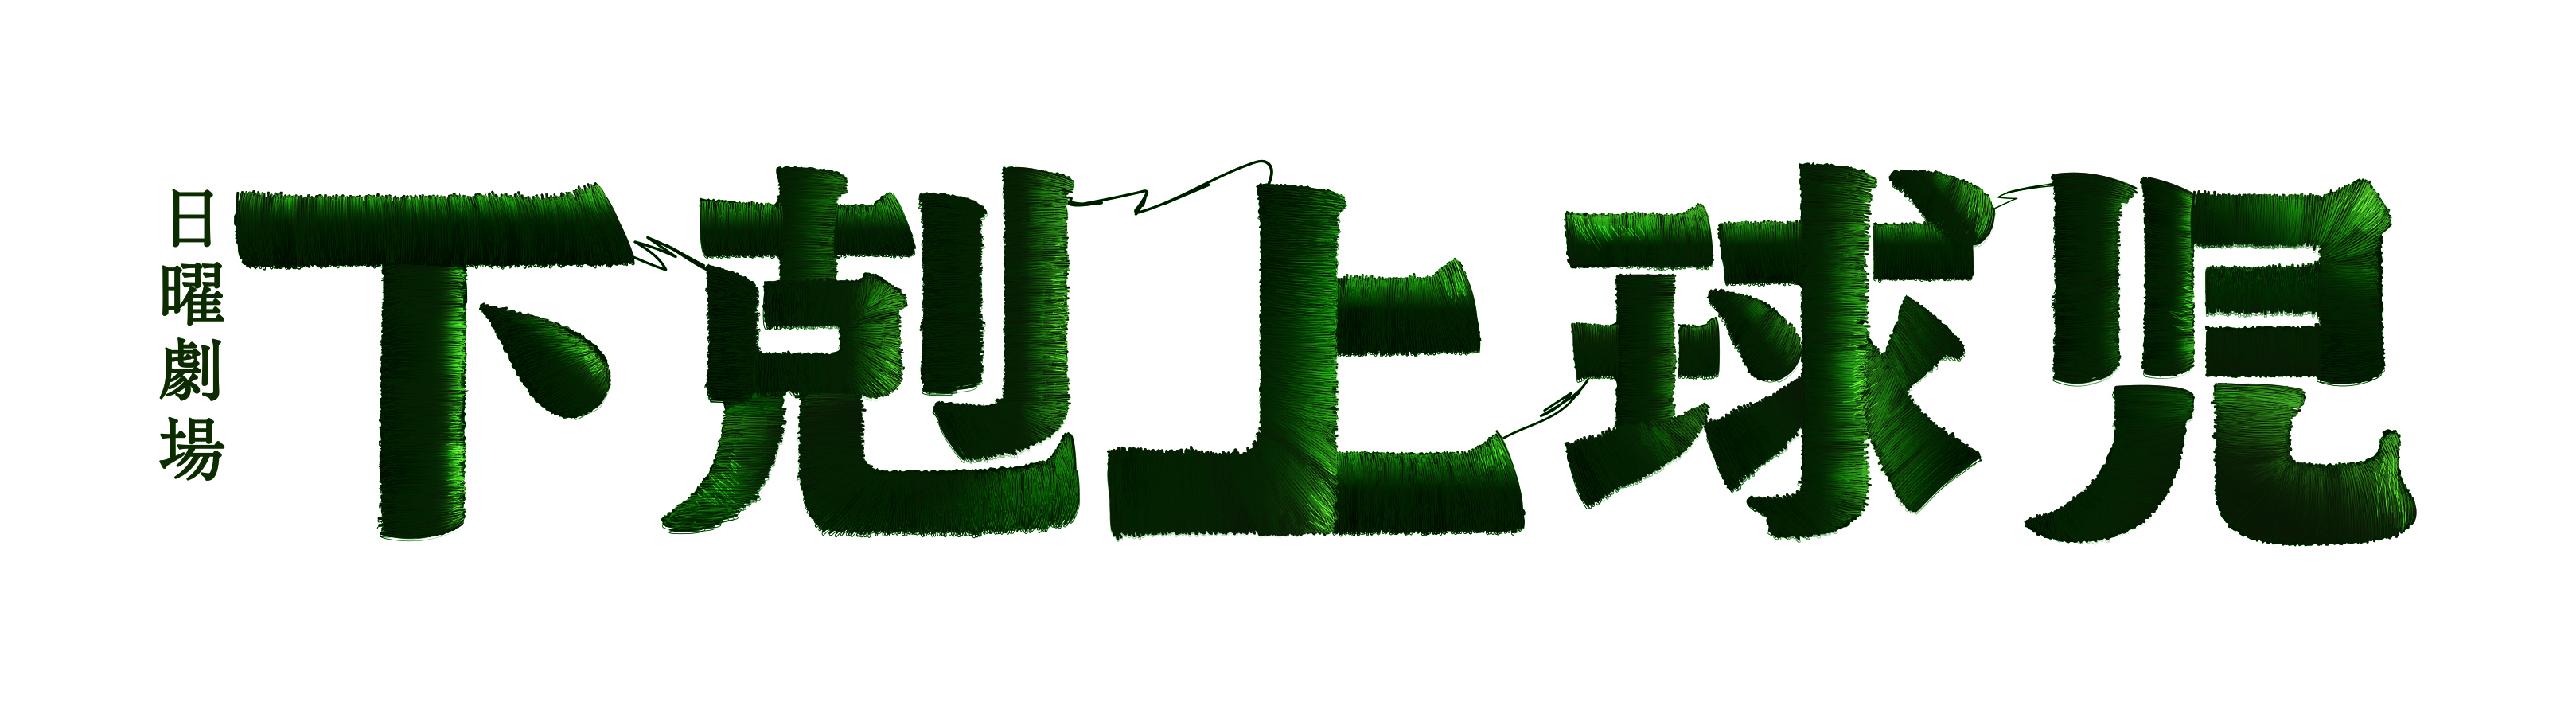 gekokujo_logo_yoko_CMYK.jpg